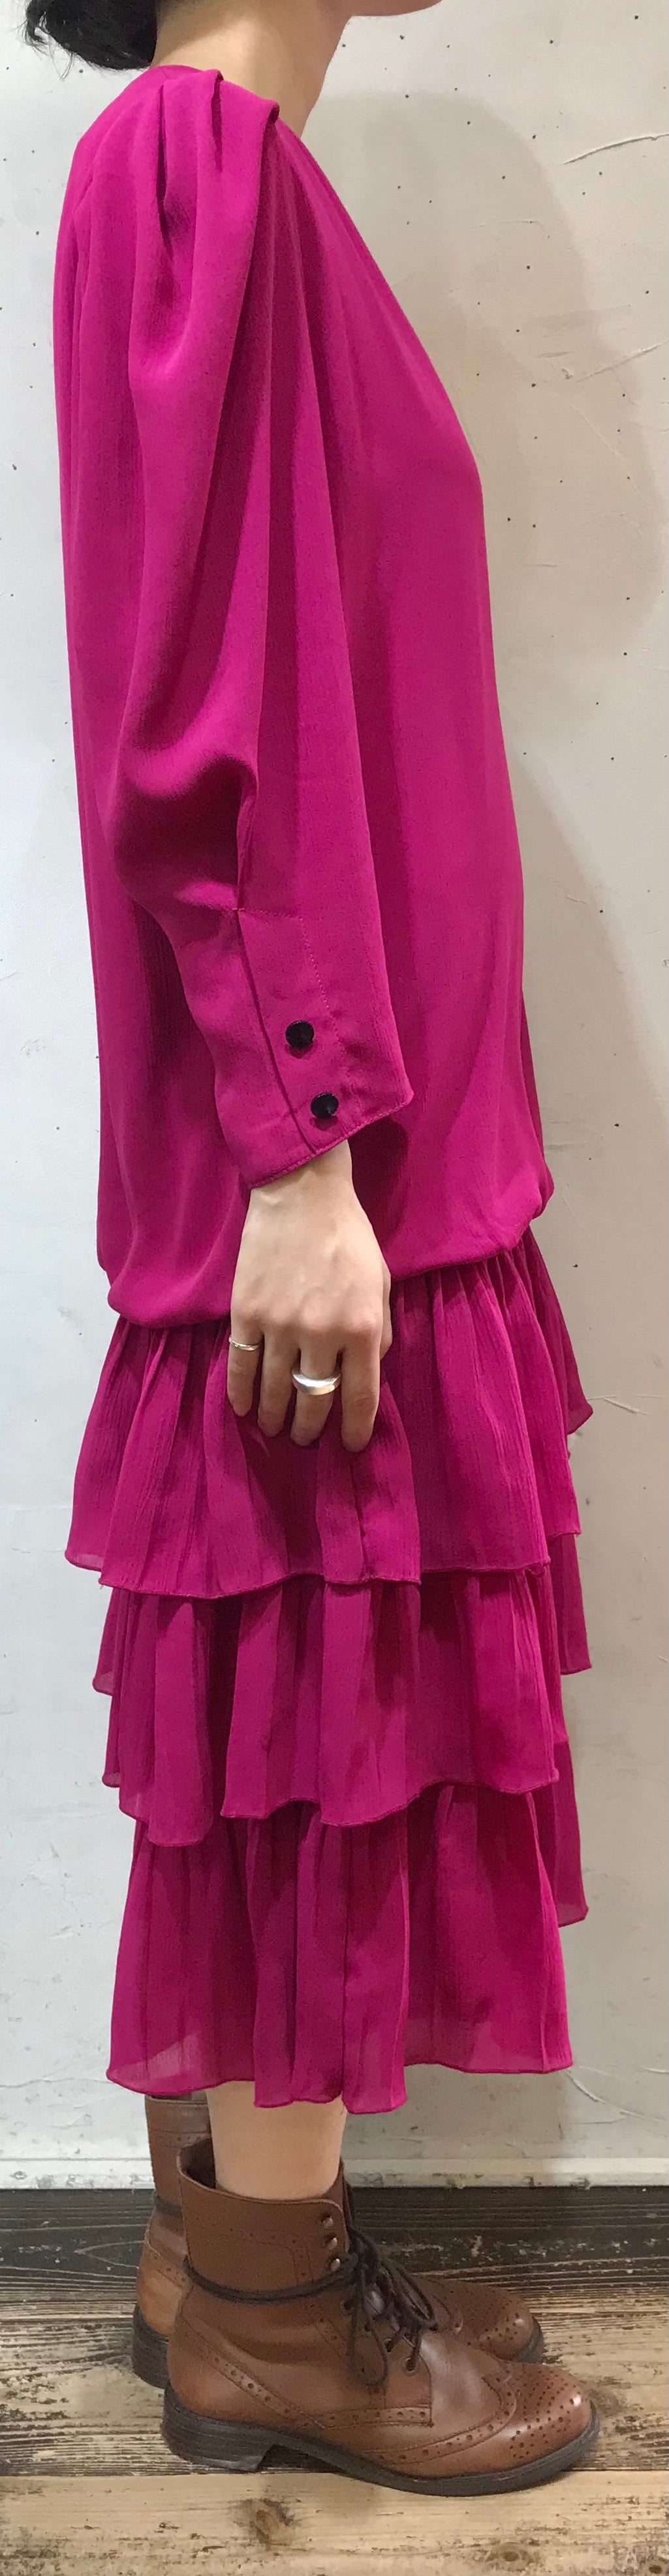 Vintage Dress [I24979]